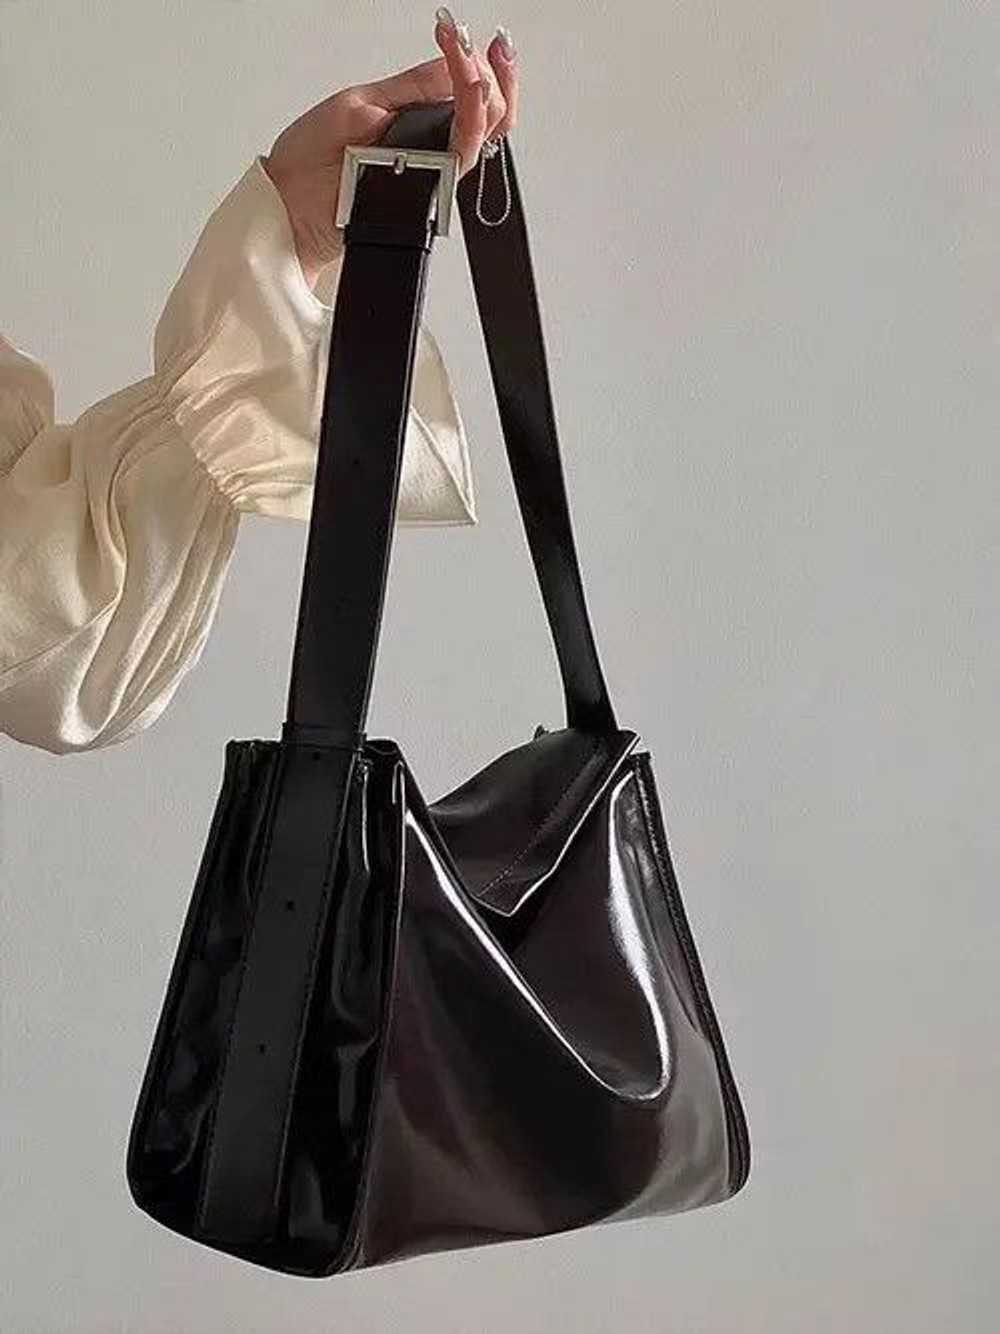 Bag × Japanese Brand Brown shoulder bag - image 4